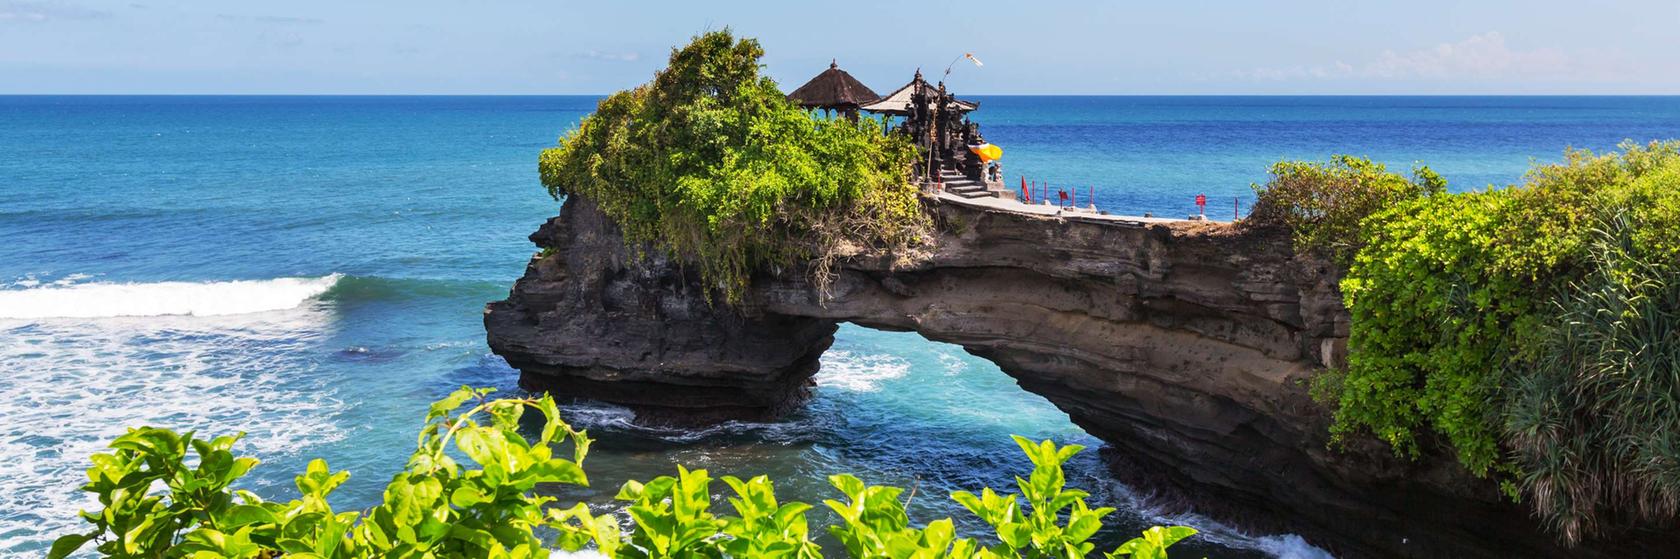 Praktické informace o Bali